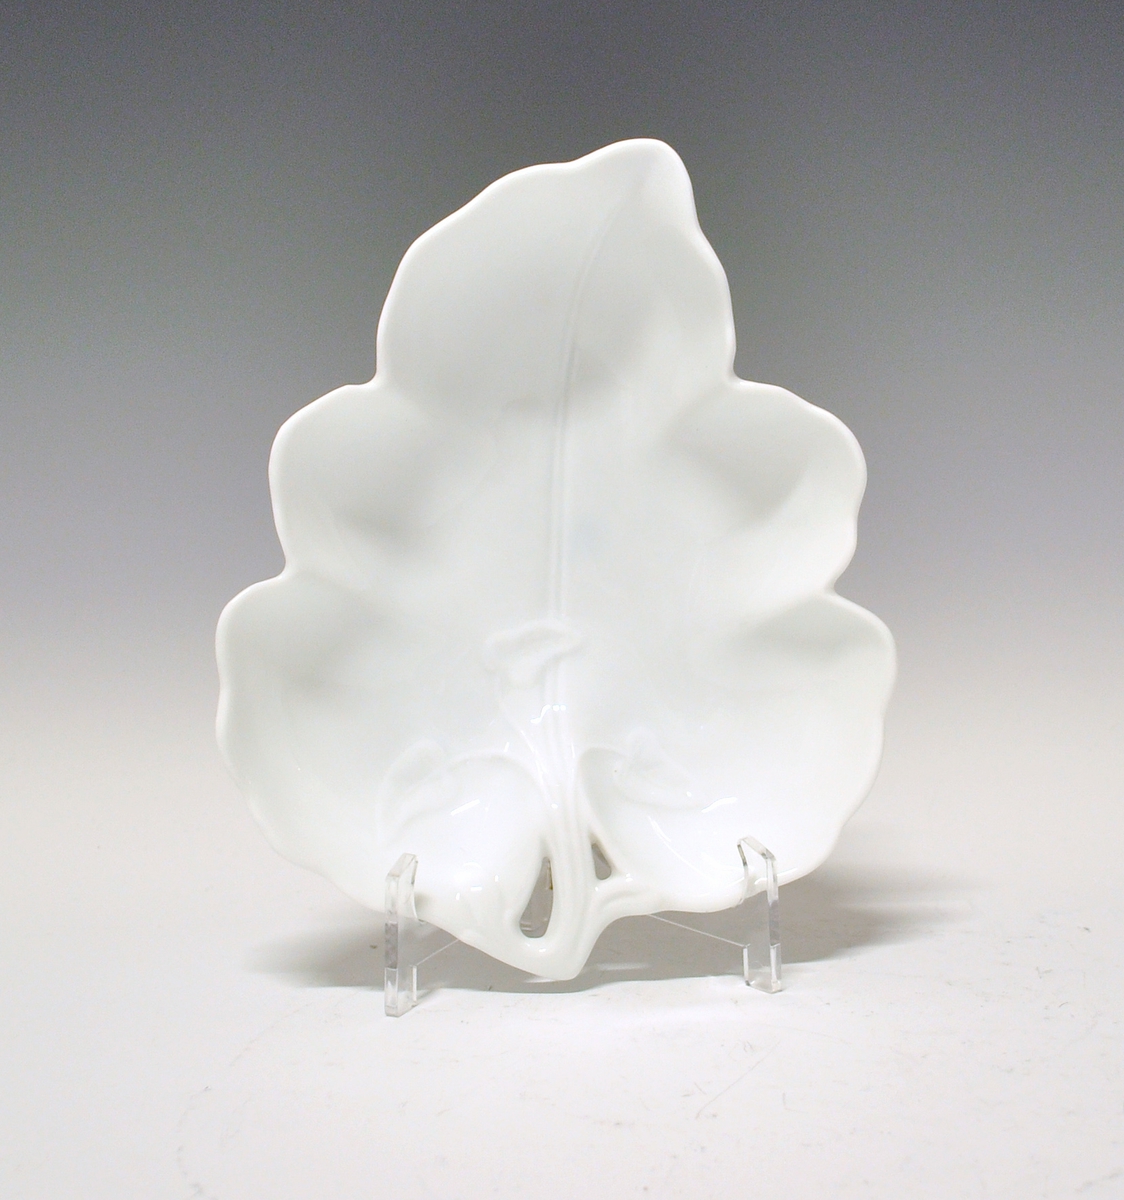 Skål av porselen. Formet som et eføyblad, gjennombrutt ved stilkfeste, med lavt bladrelieff ut fra dette. Hvit glasur, uten dekor. Hjerteformet fot.
Modell 43.2